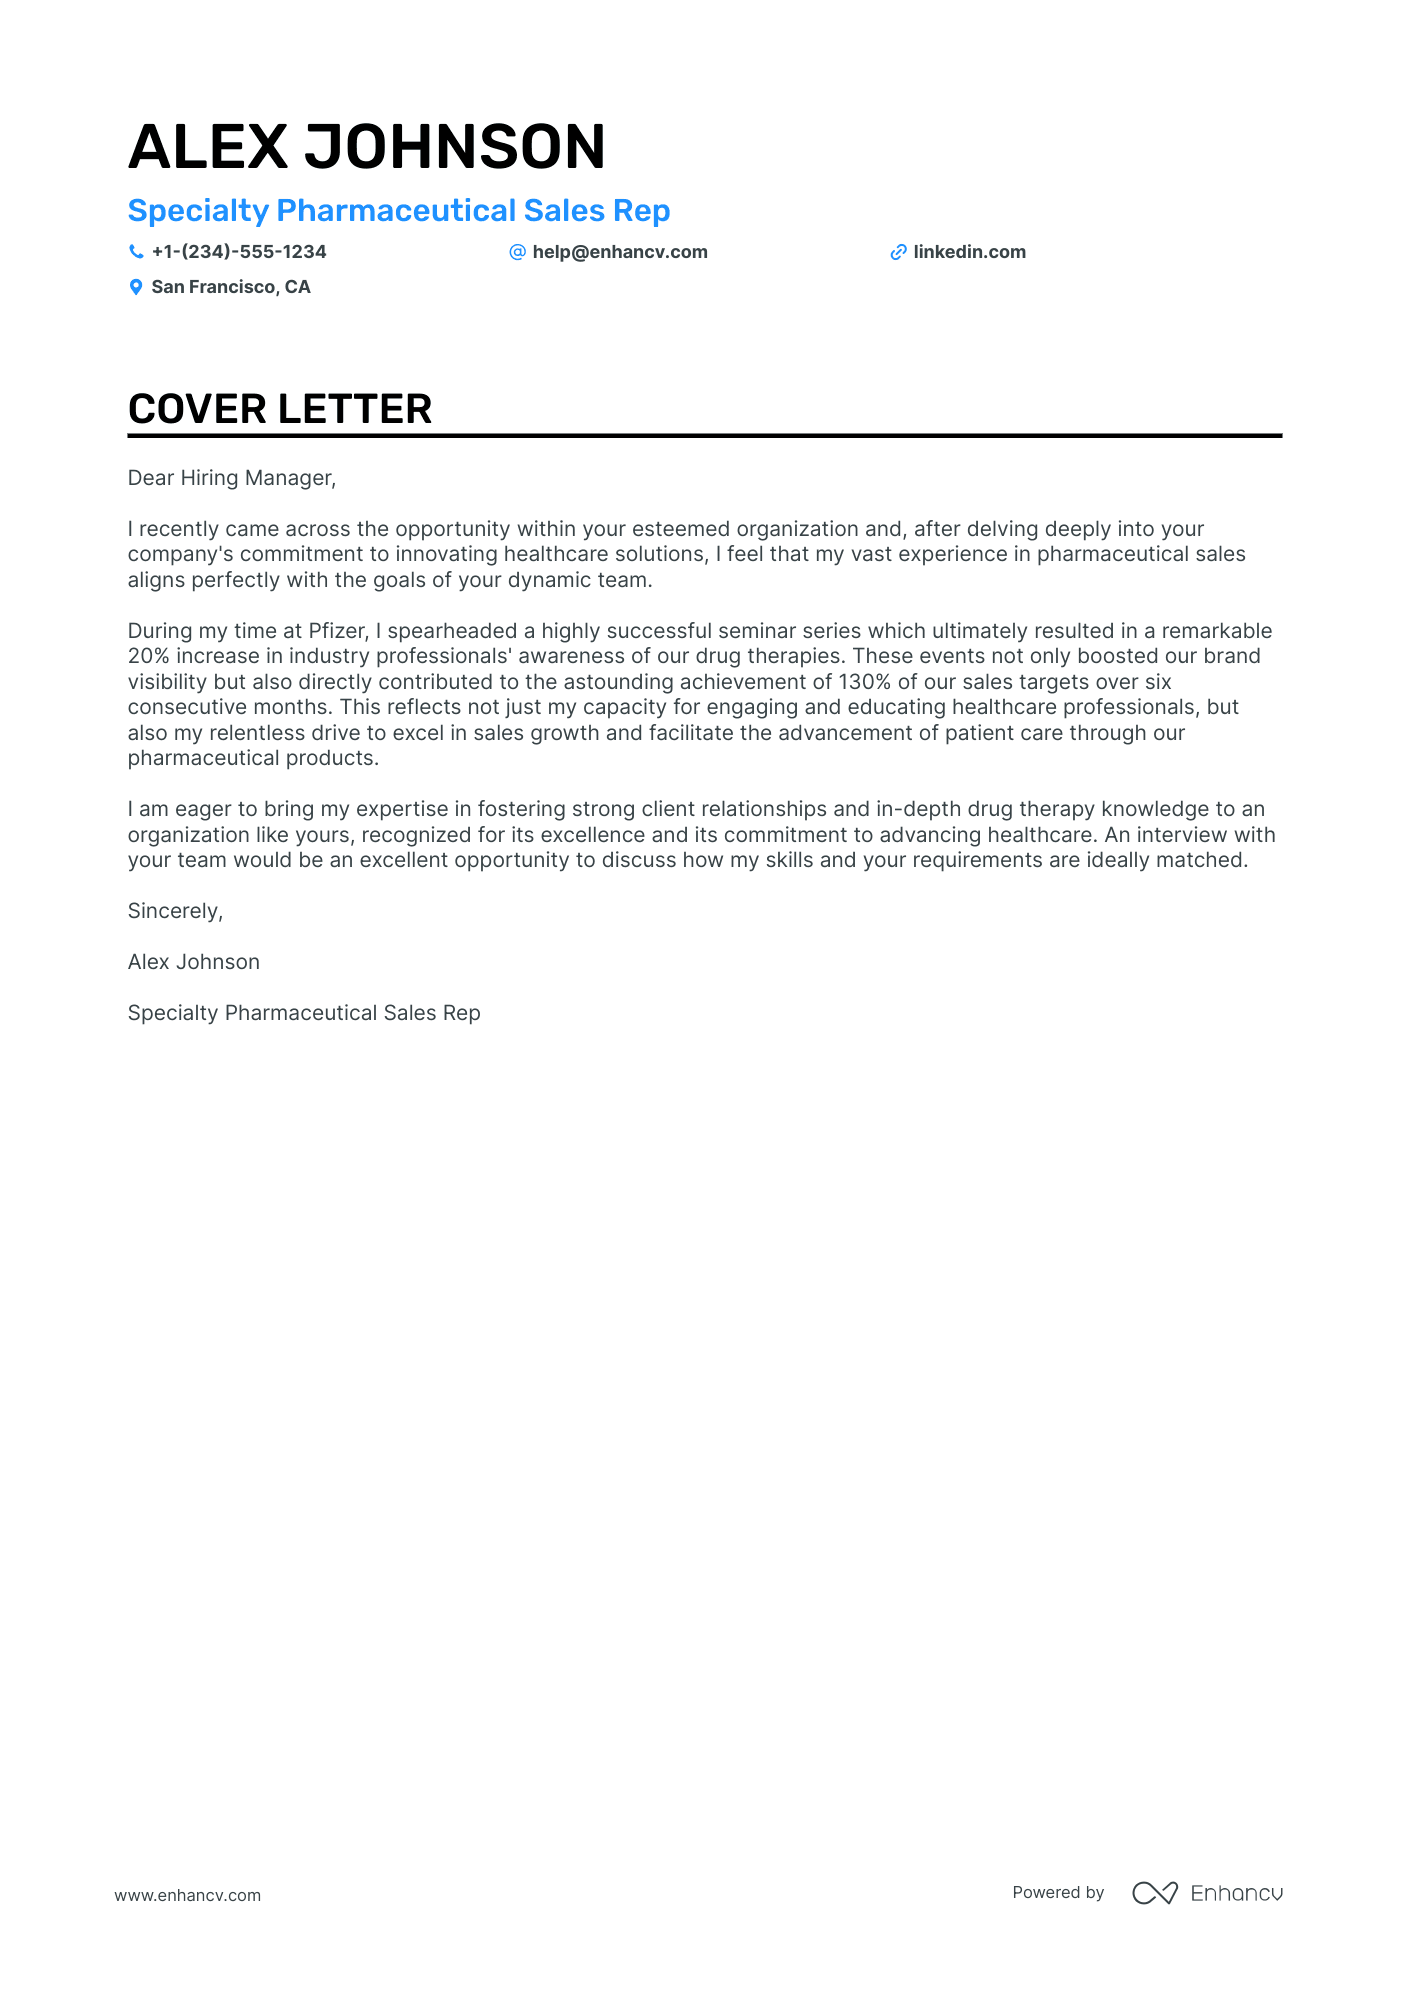 sample cover letter for job application for pharmacist